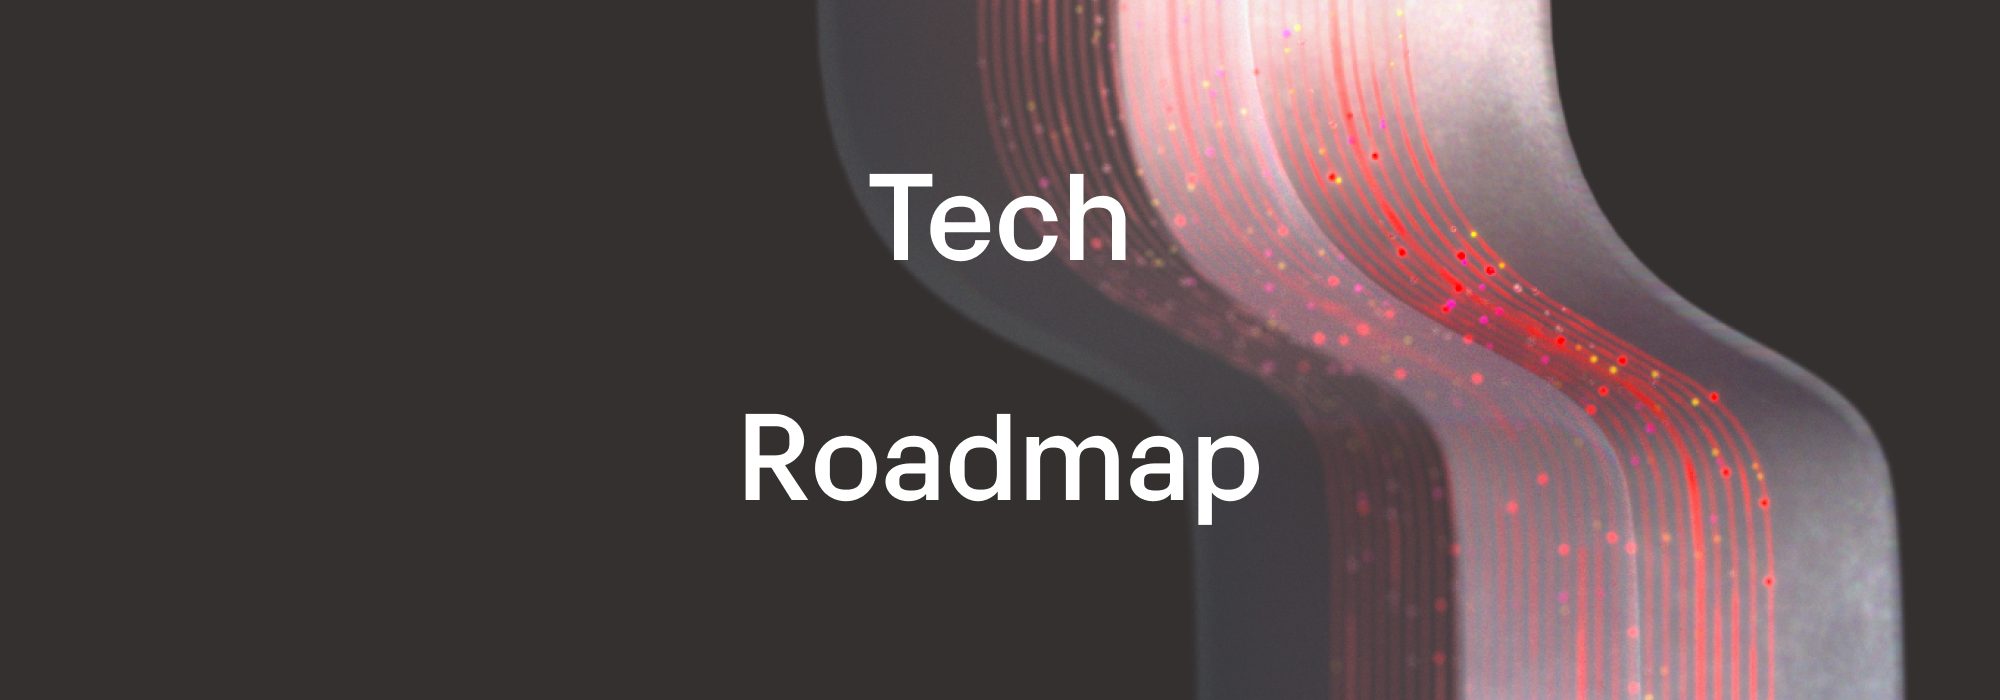 Data Union DAO's Tech Roadmap